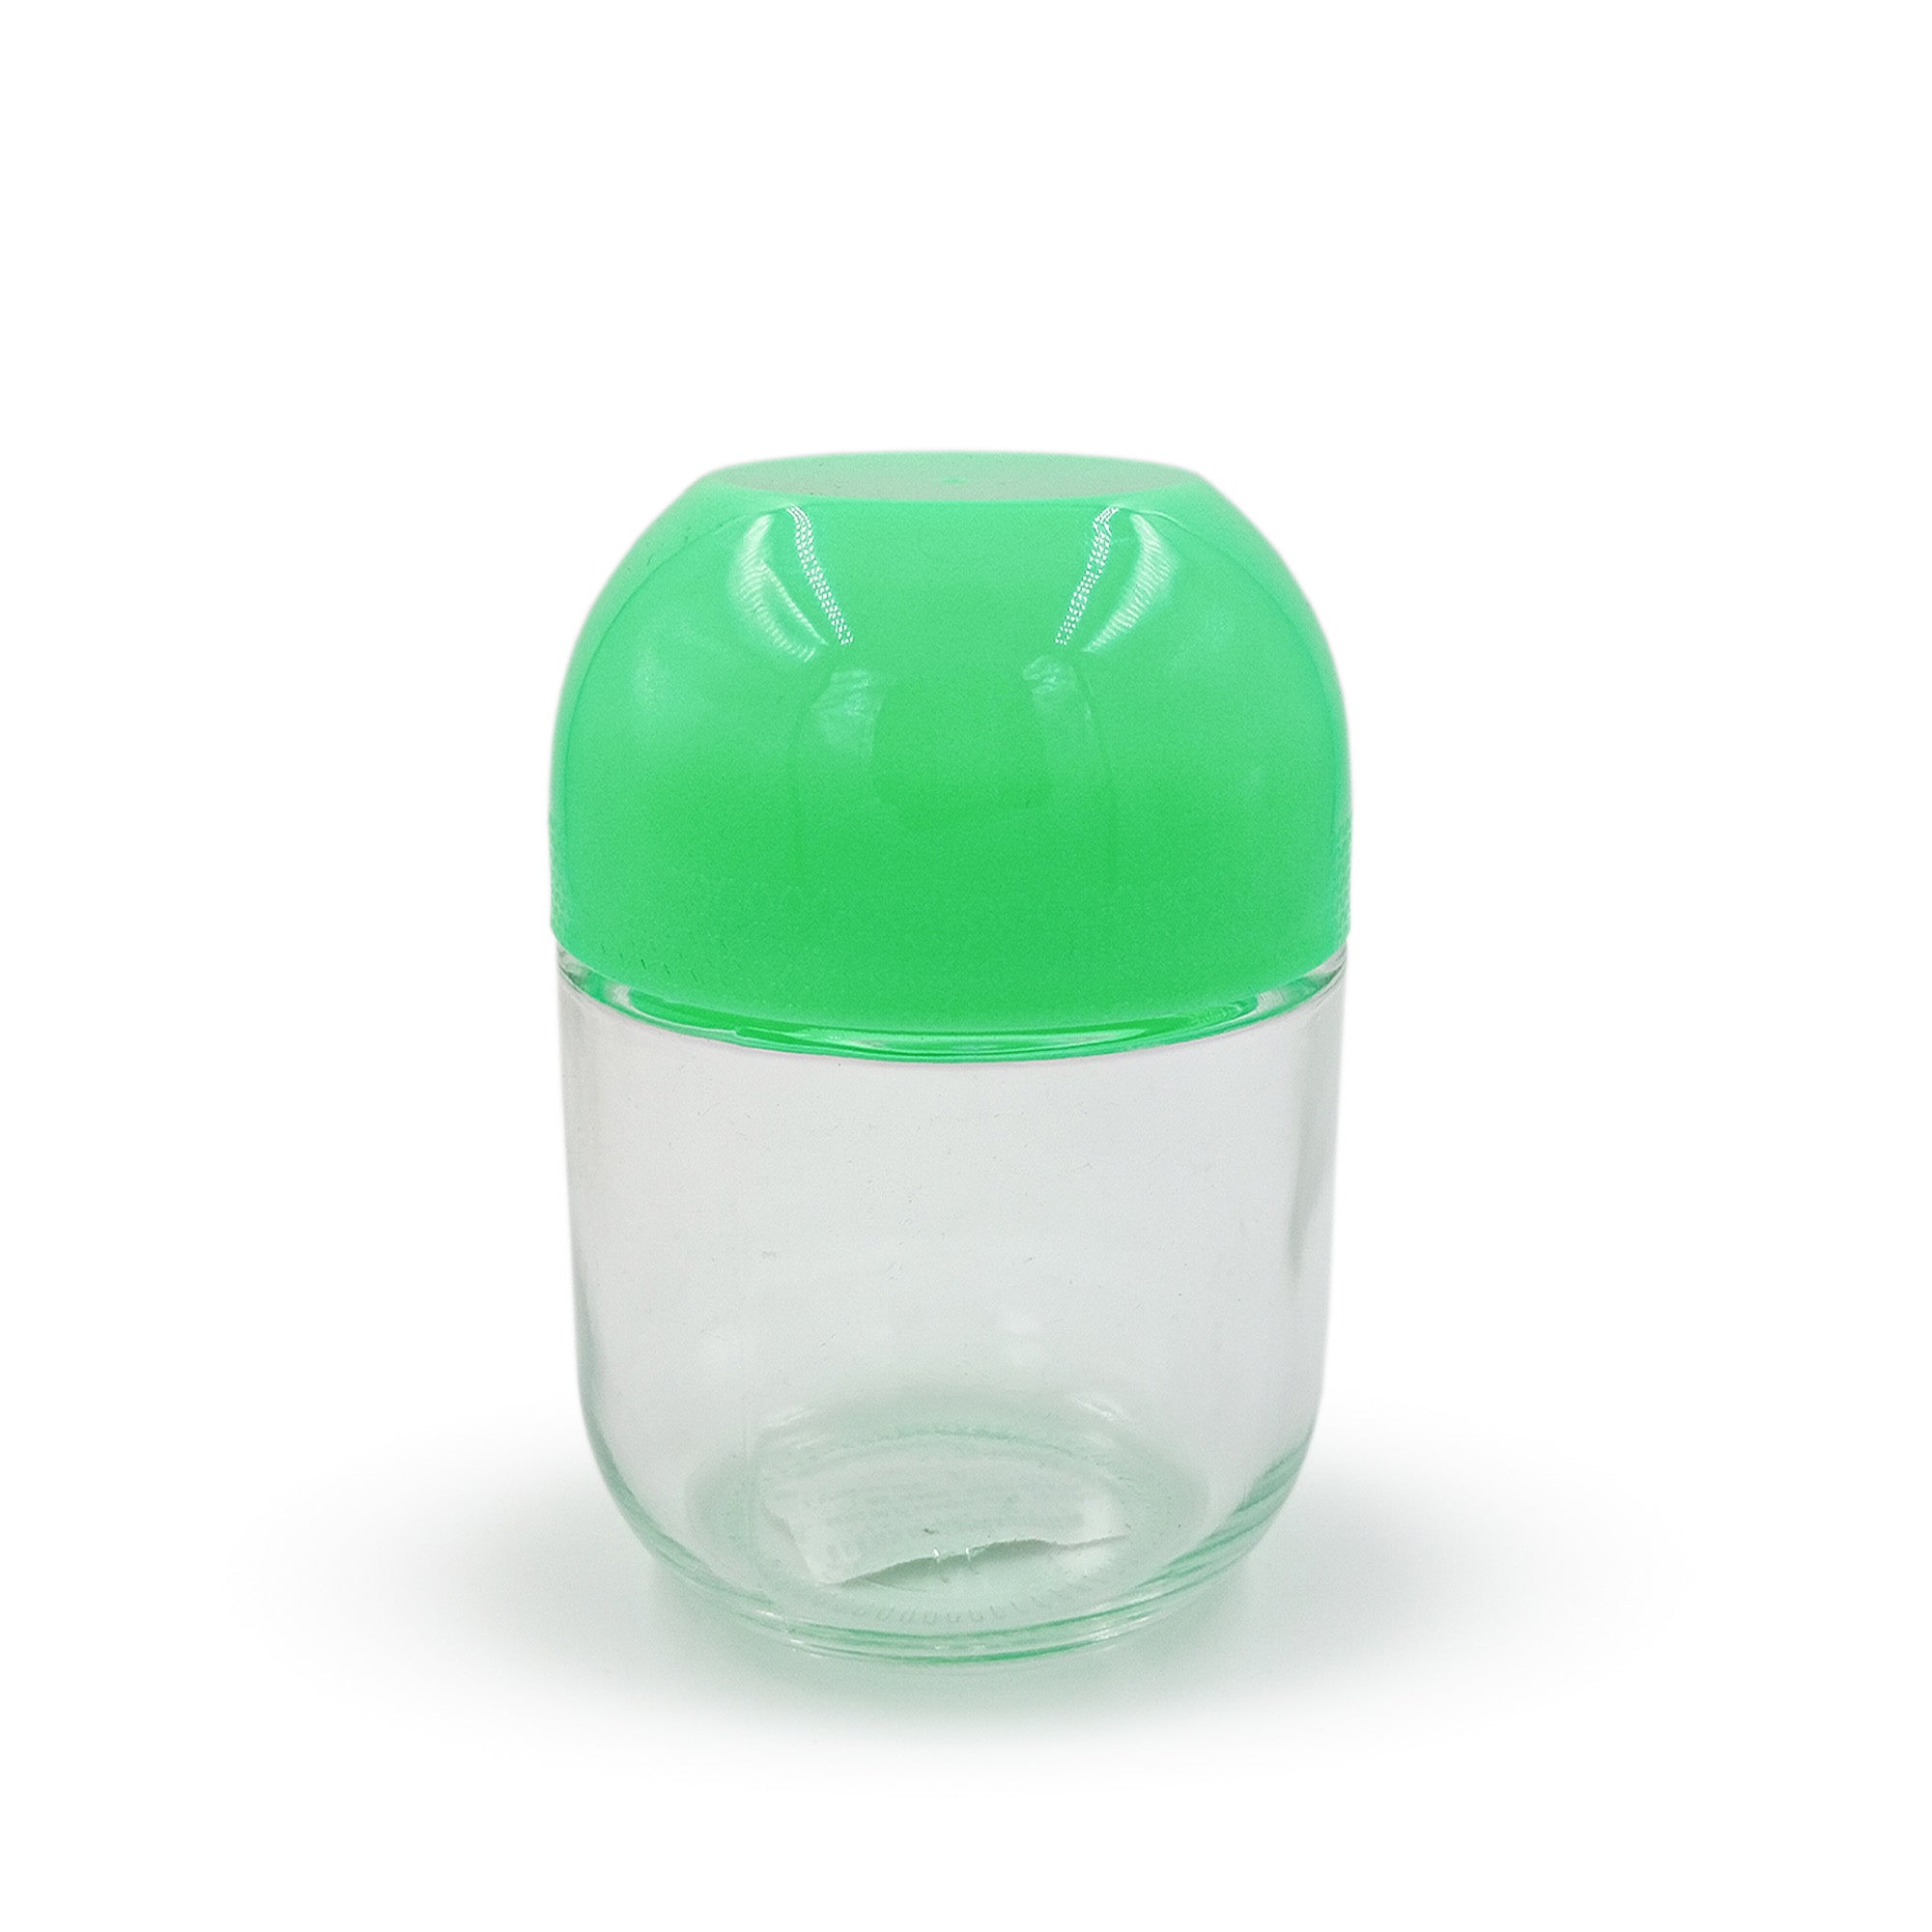 Red Butler Jars Glass Jars | 4pcs Set |350ml | Green QSGW35A1 Redbutler